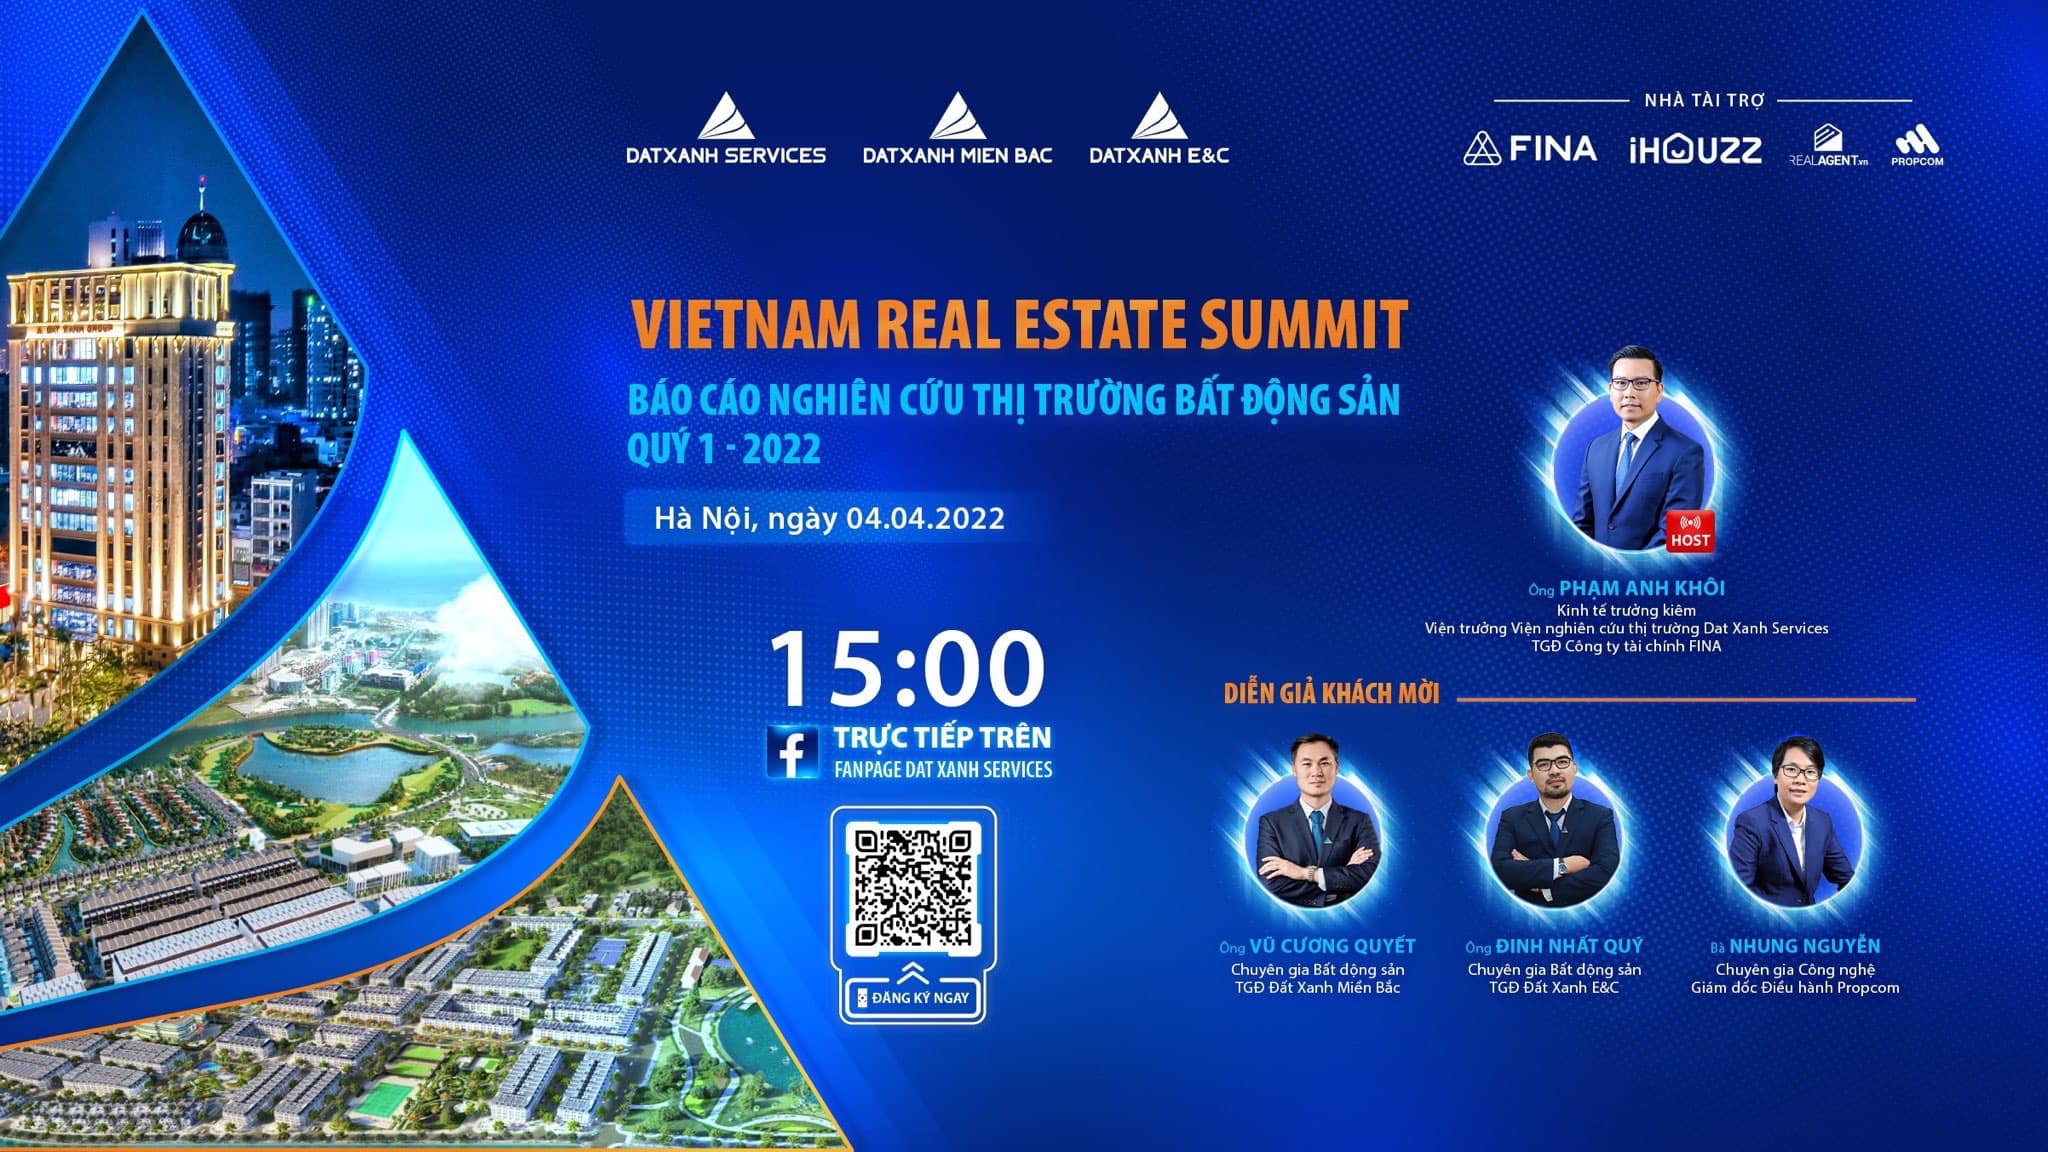 Cùng chờ đón sự kiện VietNam Real Estate Summit – Báo cáo nghiên cứu thị trường bất động sản quý I/2022